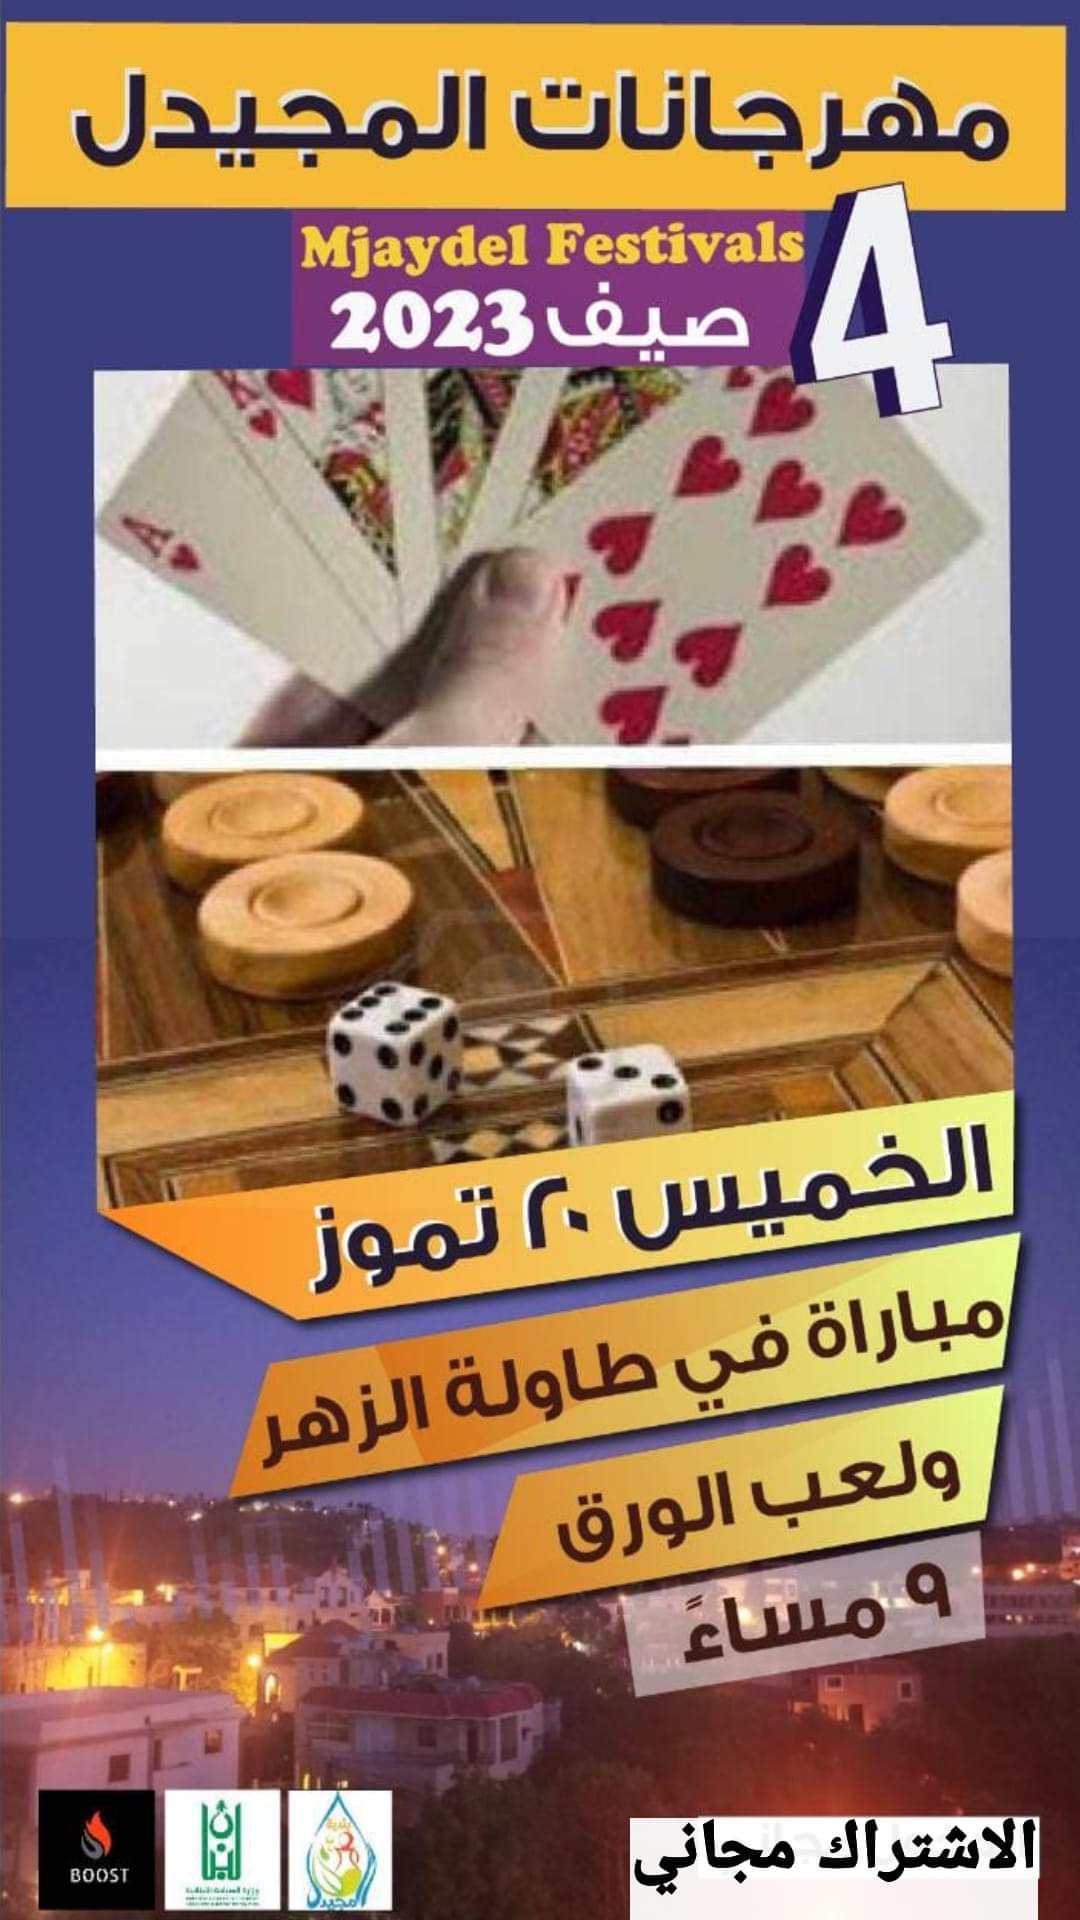 مباراة في طاولة الزهر ولعب الورق 20 تموز في مهرجانات المجيدل